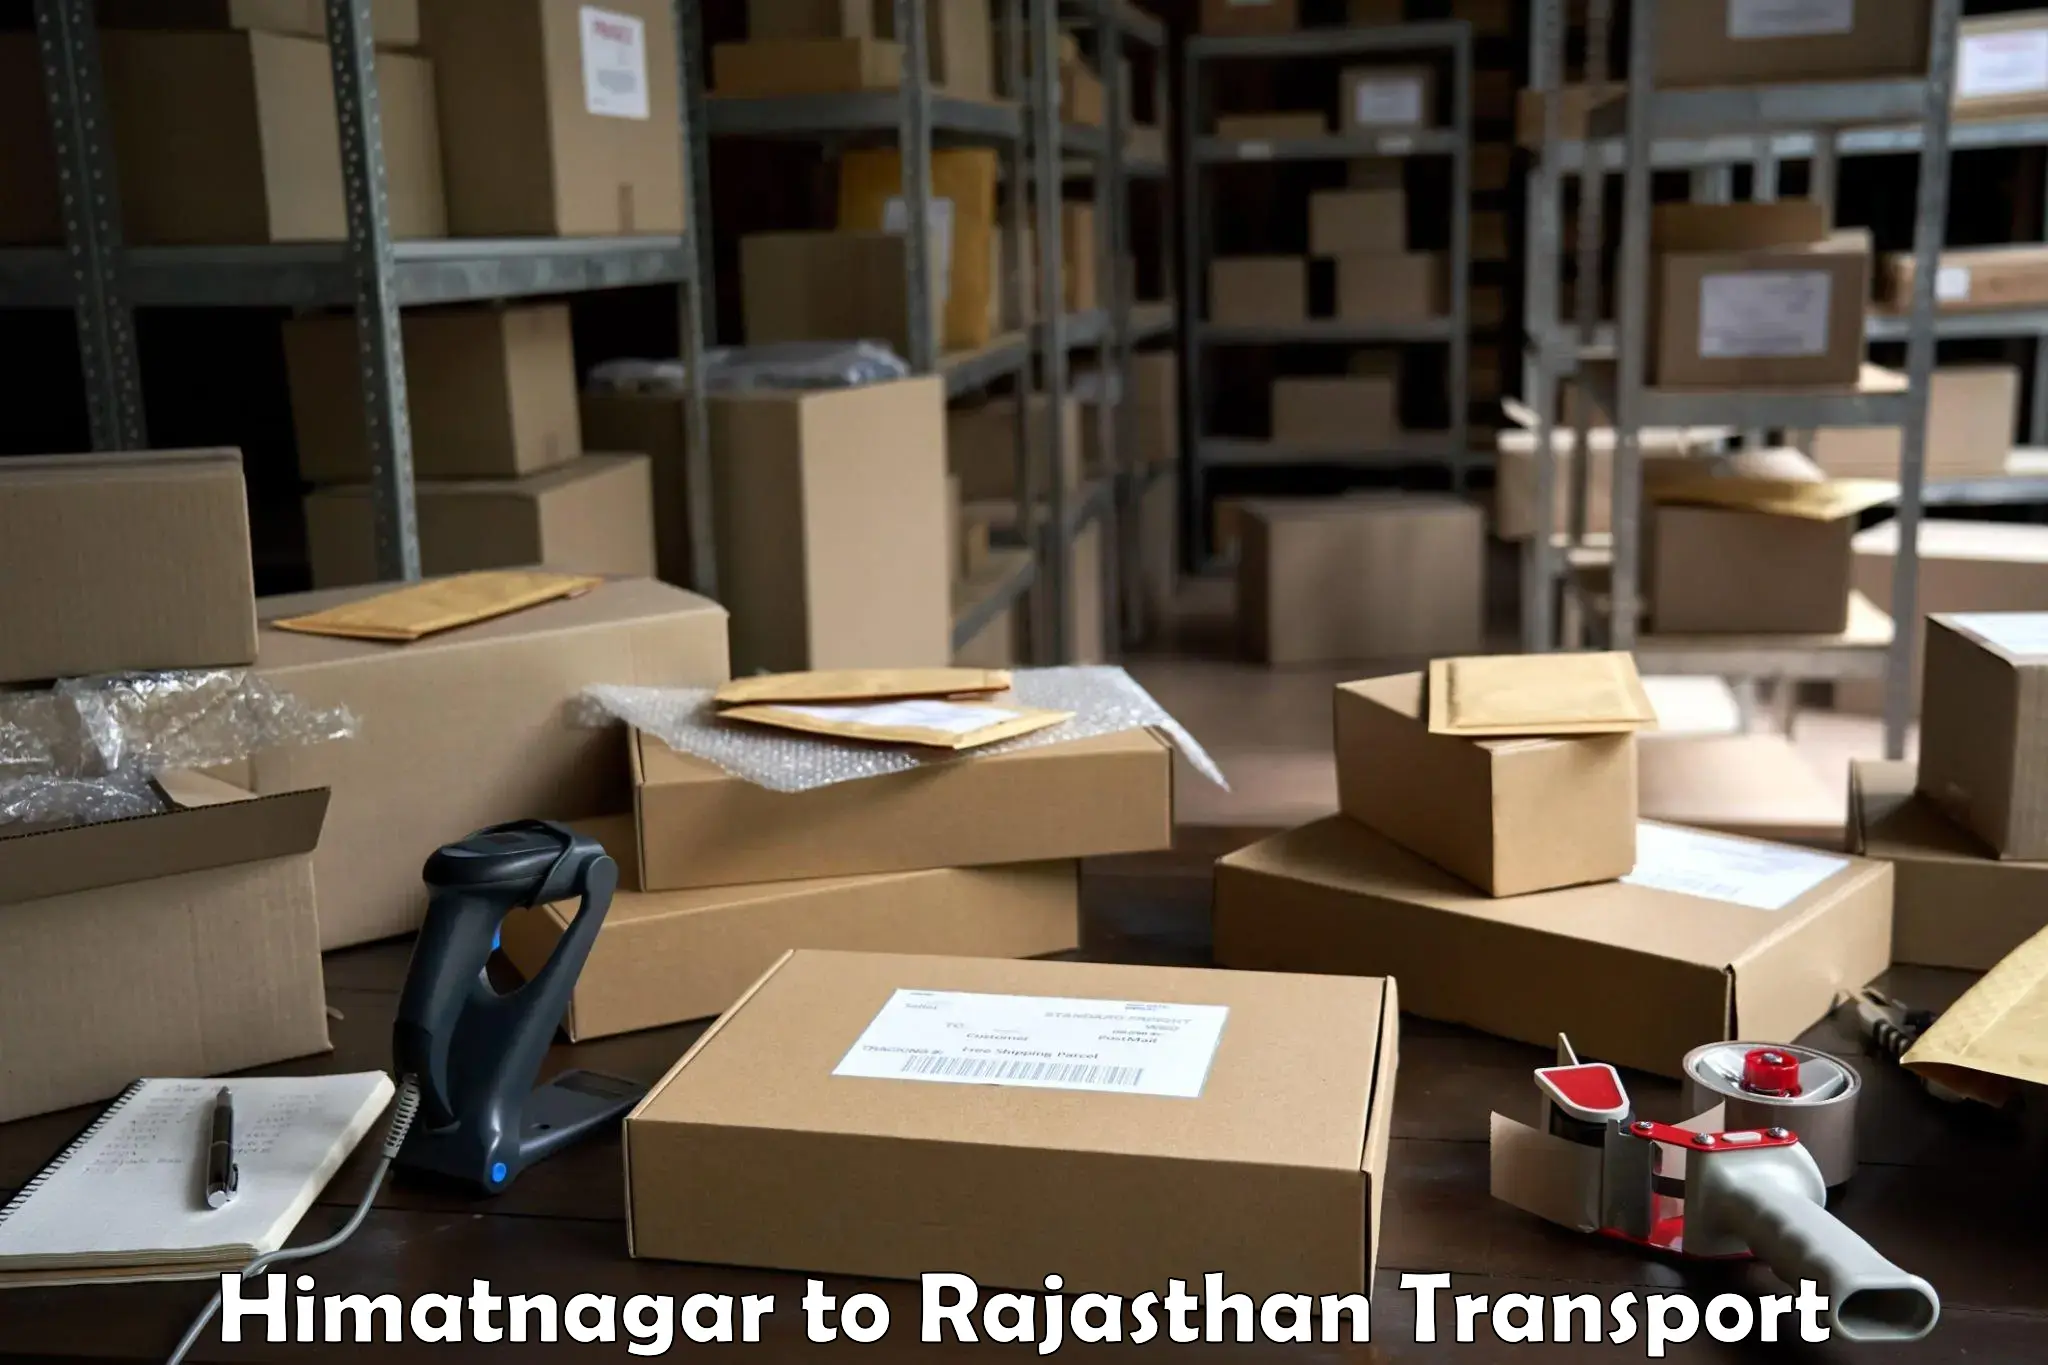 Daily transport service Himatnagar to Pratapgarh Rajasthan